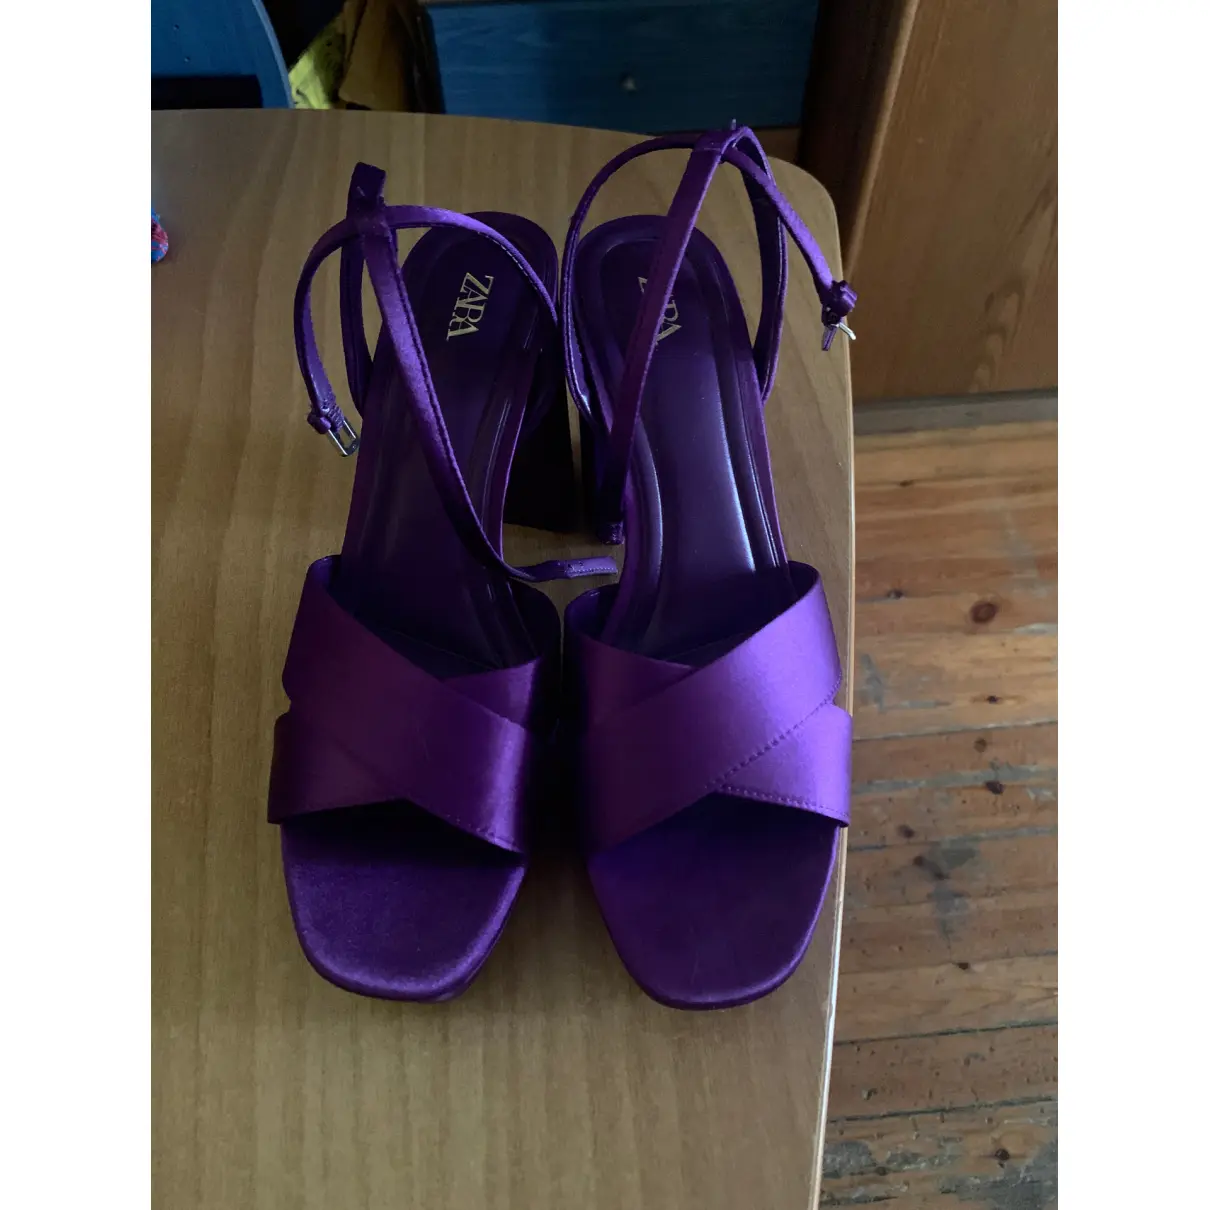 Buy Zara Cloth sandals online